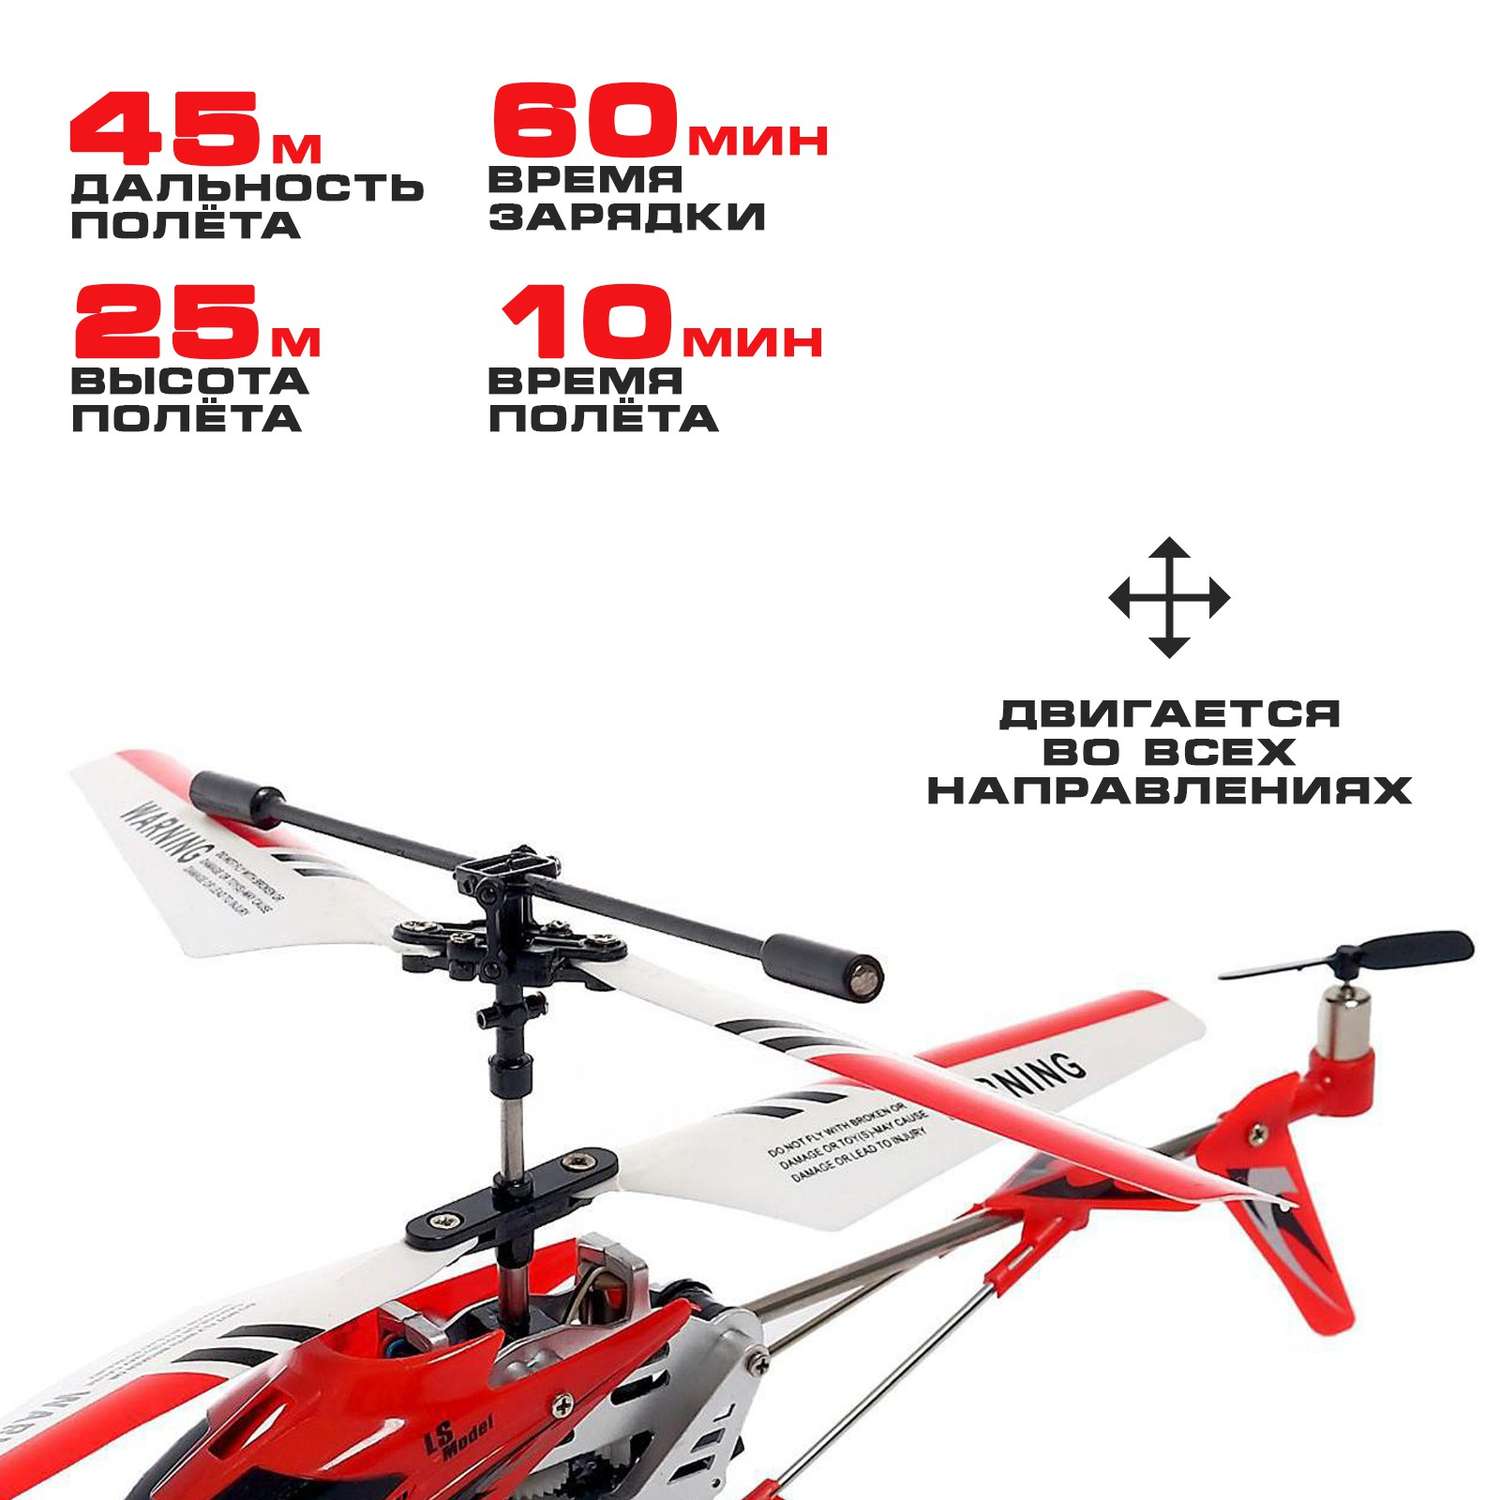 Вертолёт Автоград радиоуправляемый SKY с гироскопом цвет красный - фото 3